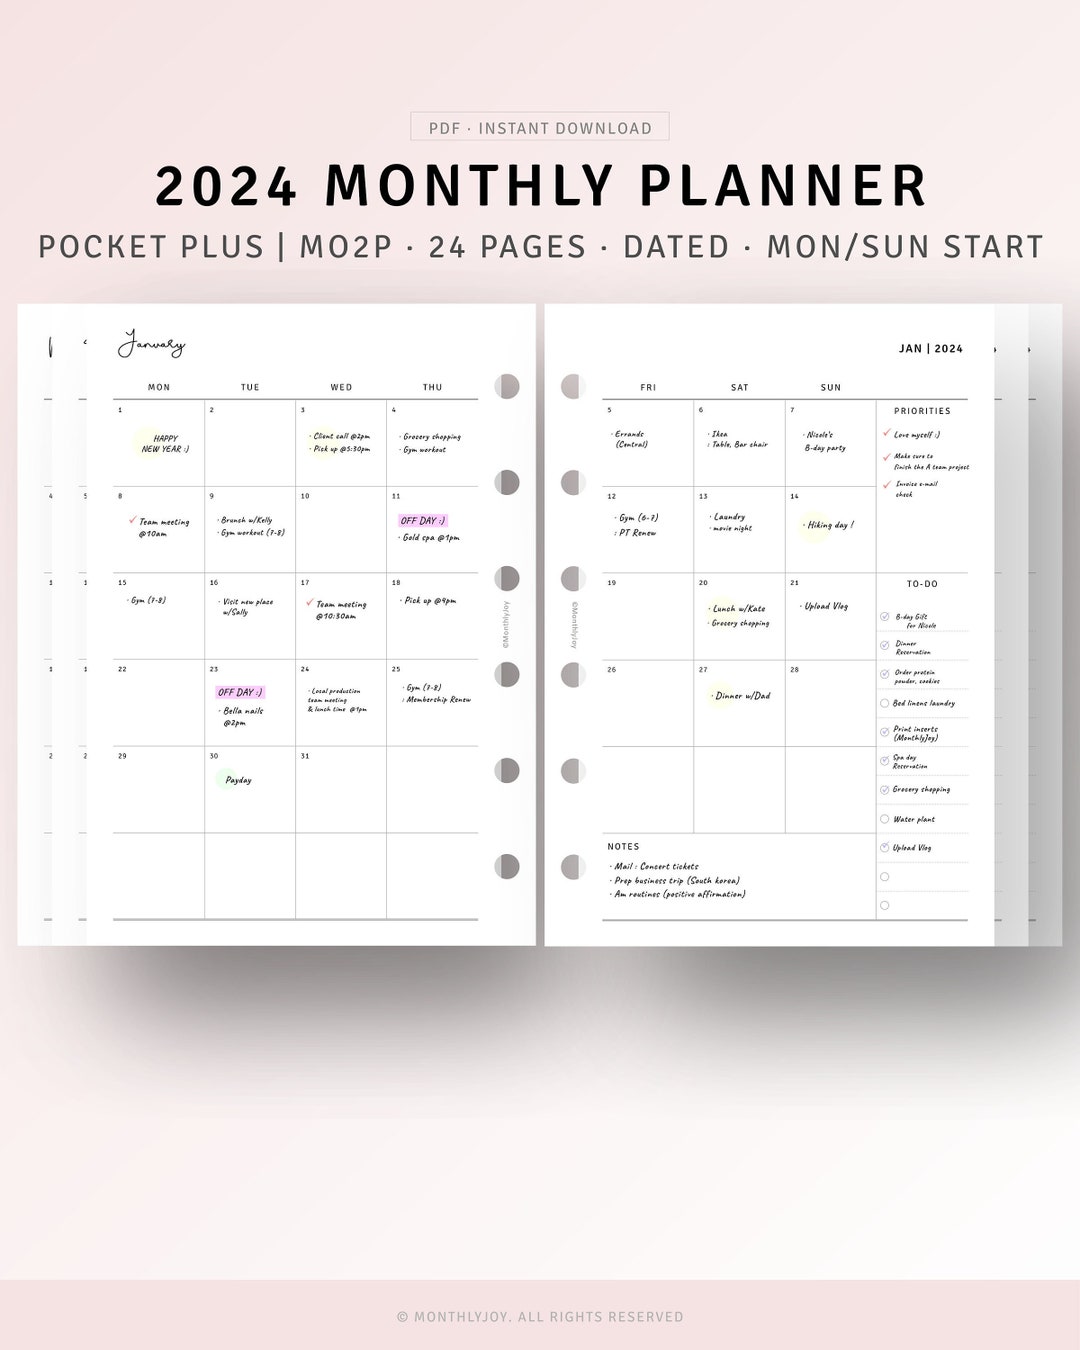 Agenda de poche mensuel 2024-2028: Planificateur mensuel 5 ans 60 mois, 1  mois sur 2 pages | Calendrier du 1er janvier 2024 au 31 décembre 2028 